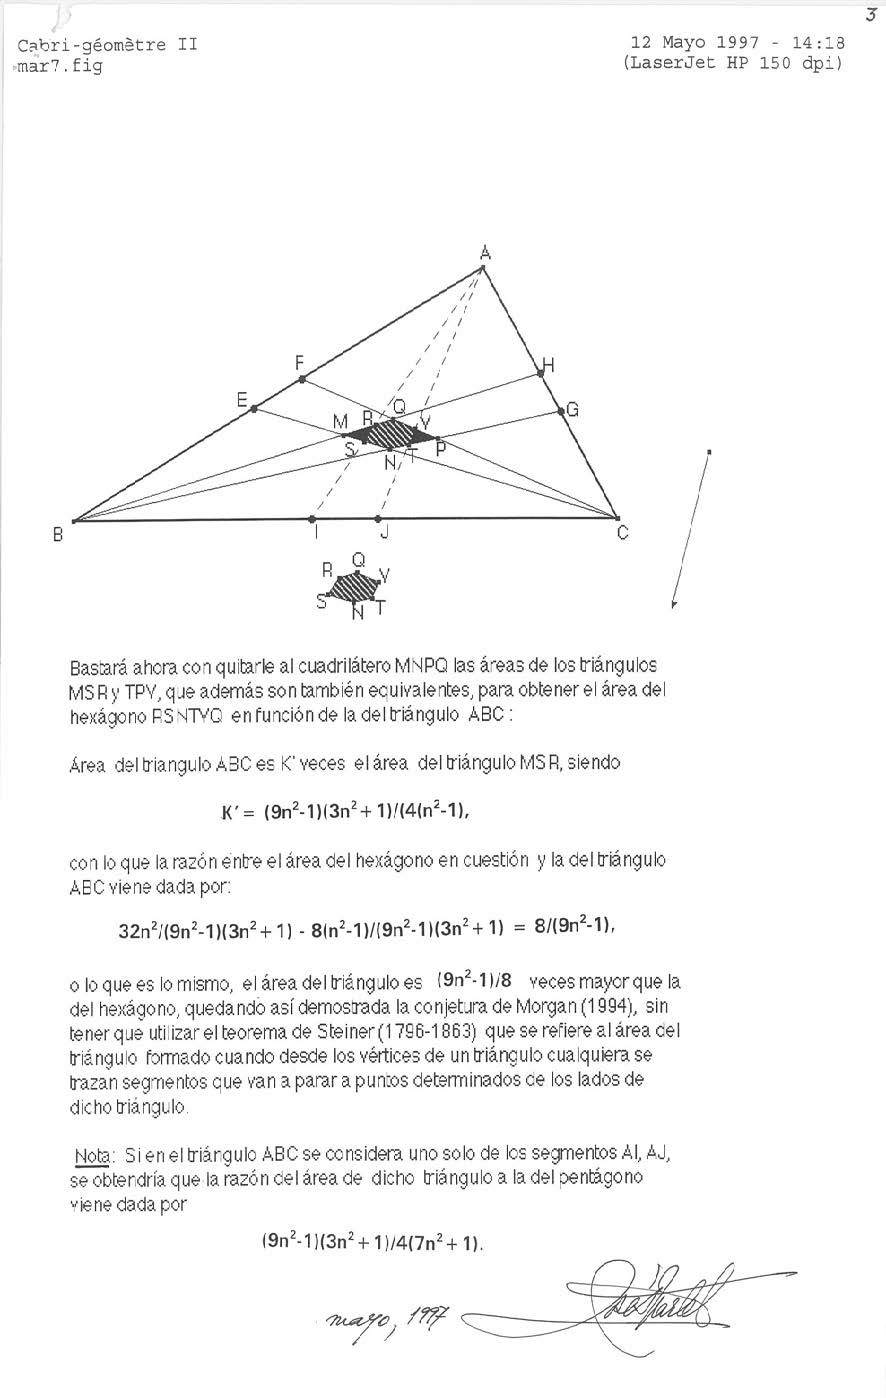 Relación entre el área de un triángulo y el área del cuadrilátero interior